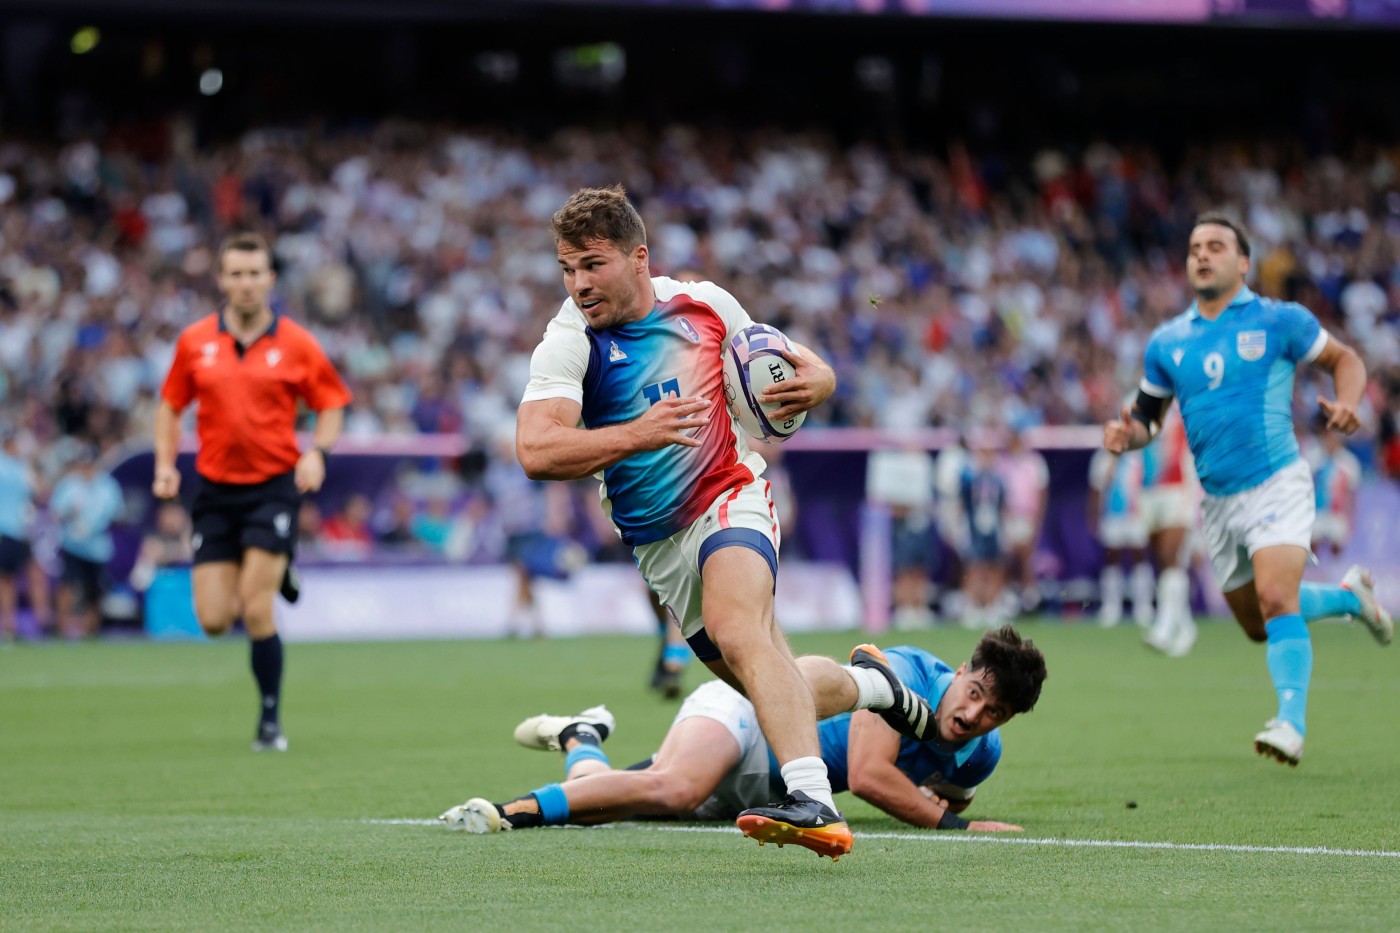 Olimpiadi, Rugby Sevens: il programma di semifinali e finali e dove si vedono in tv e streaming